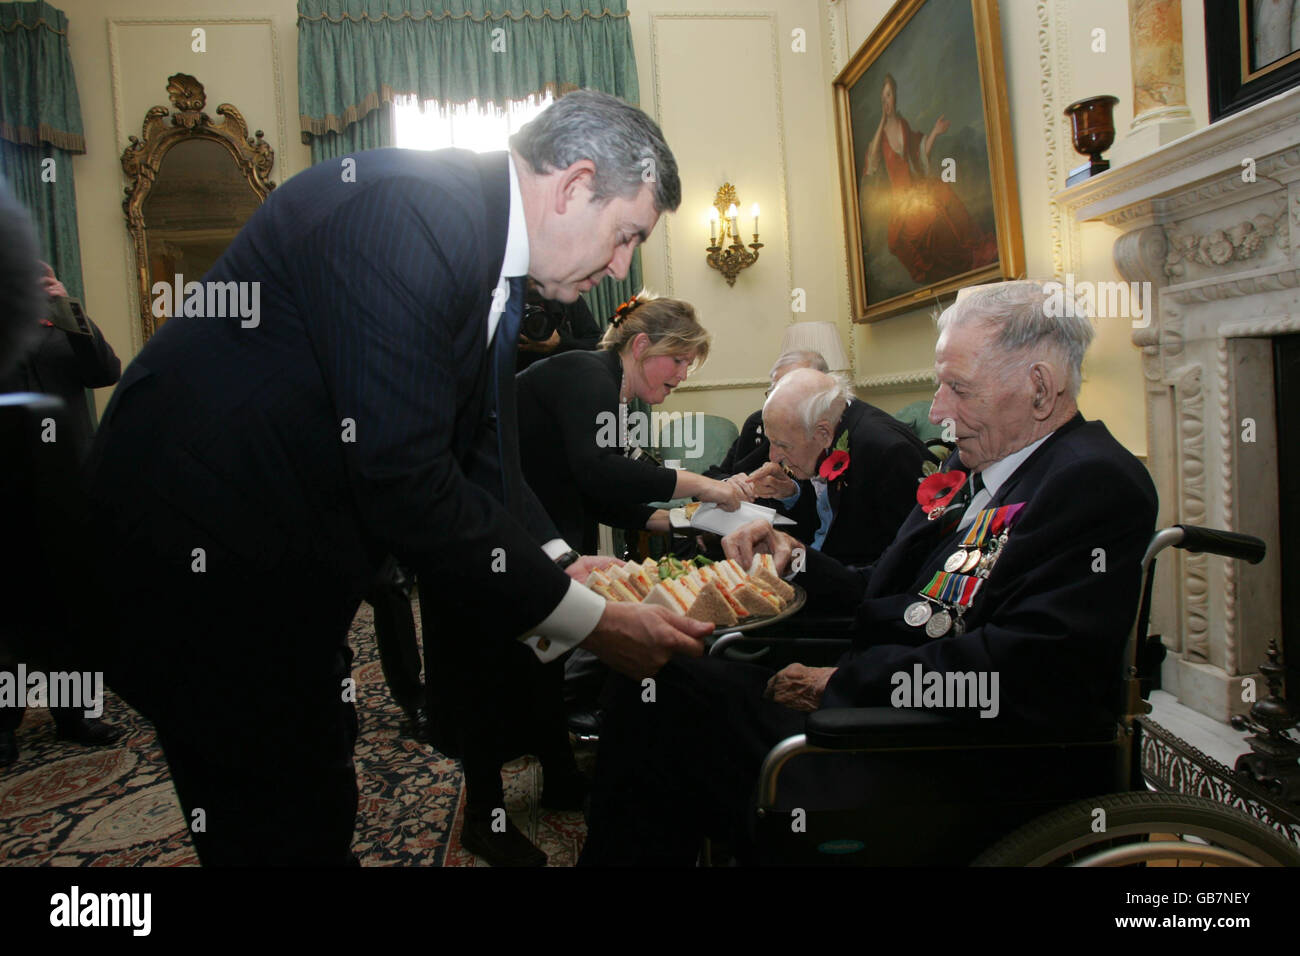 Premierminister Gordon Brown, mit den Veteranen des Ersten Weltkriegs Bill Stone, 108, links, Henry Allinghan, 112, Mitte, und Harry Patch, 110, rechts, während eines Waffenstillstandsempfangs für Veteranen des Ersten Weltkriegs, in Browns offizieller Residenz in der Downing Street 10, im Zentrum von London. Stockfoto